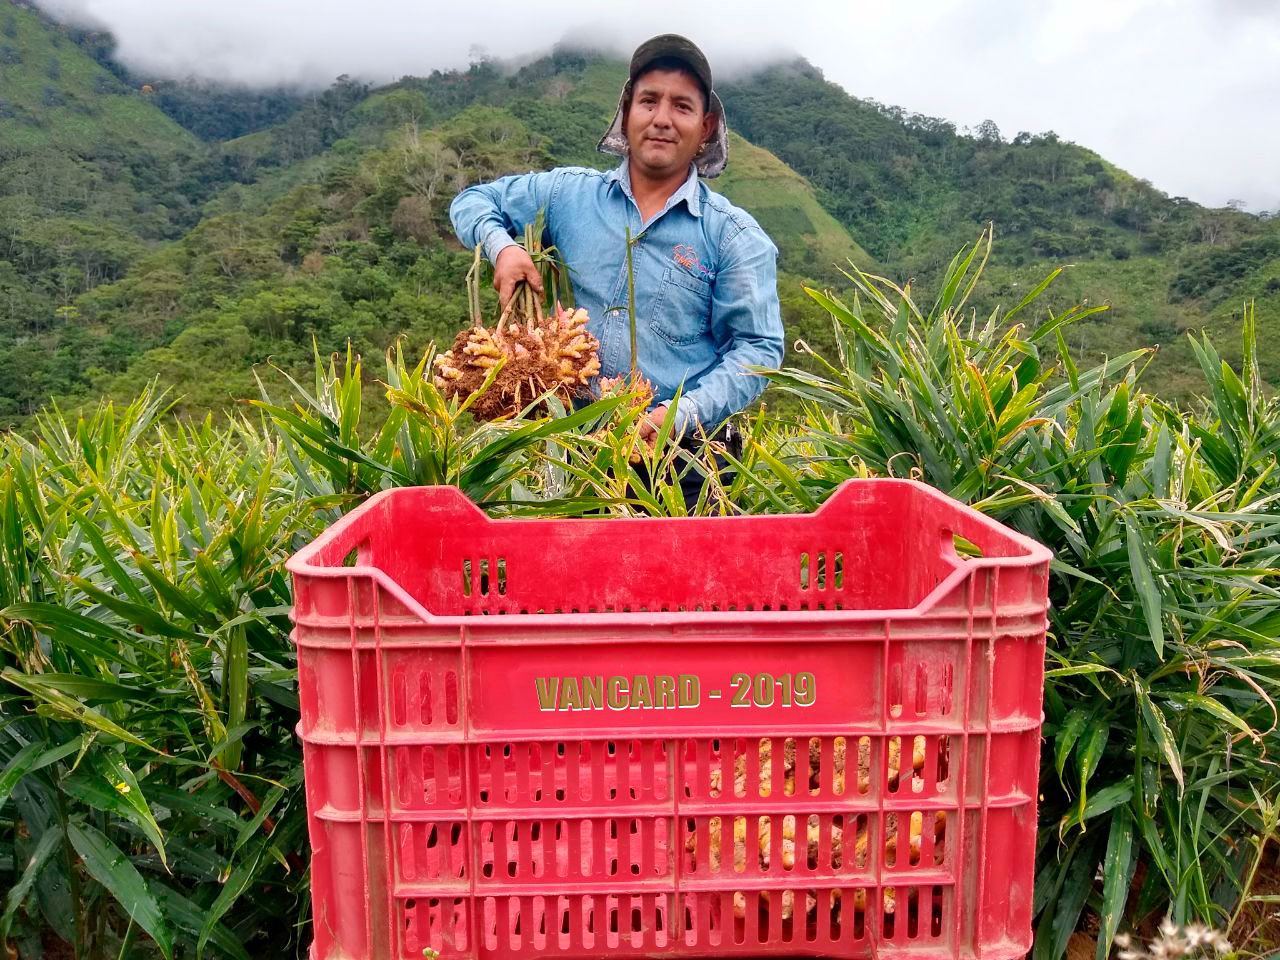 Peruvian worker in a field.